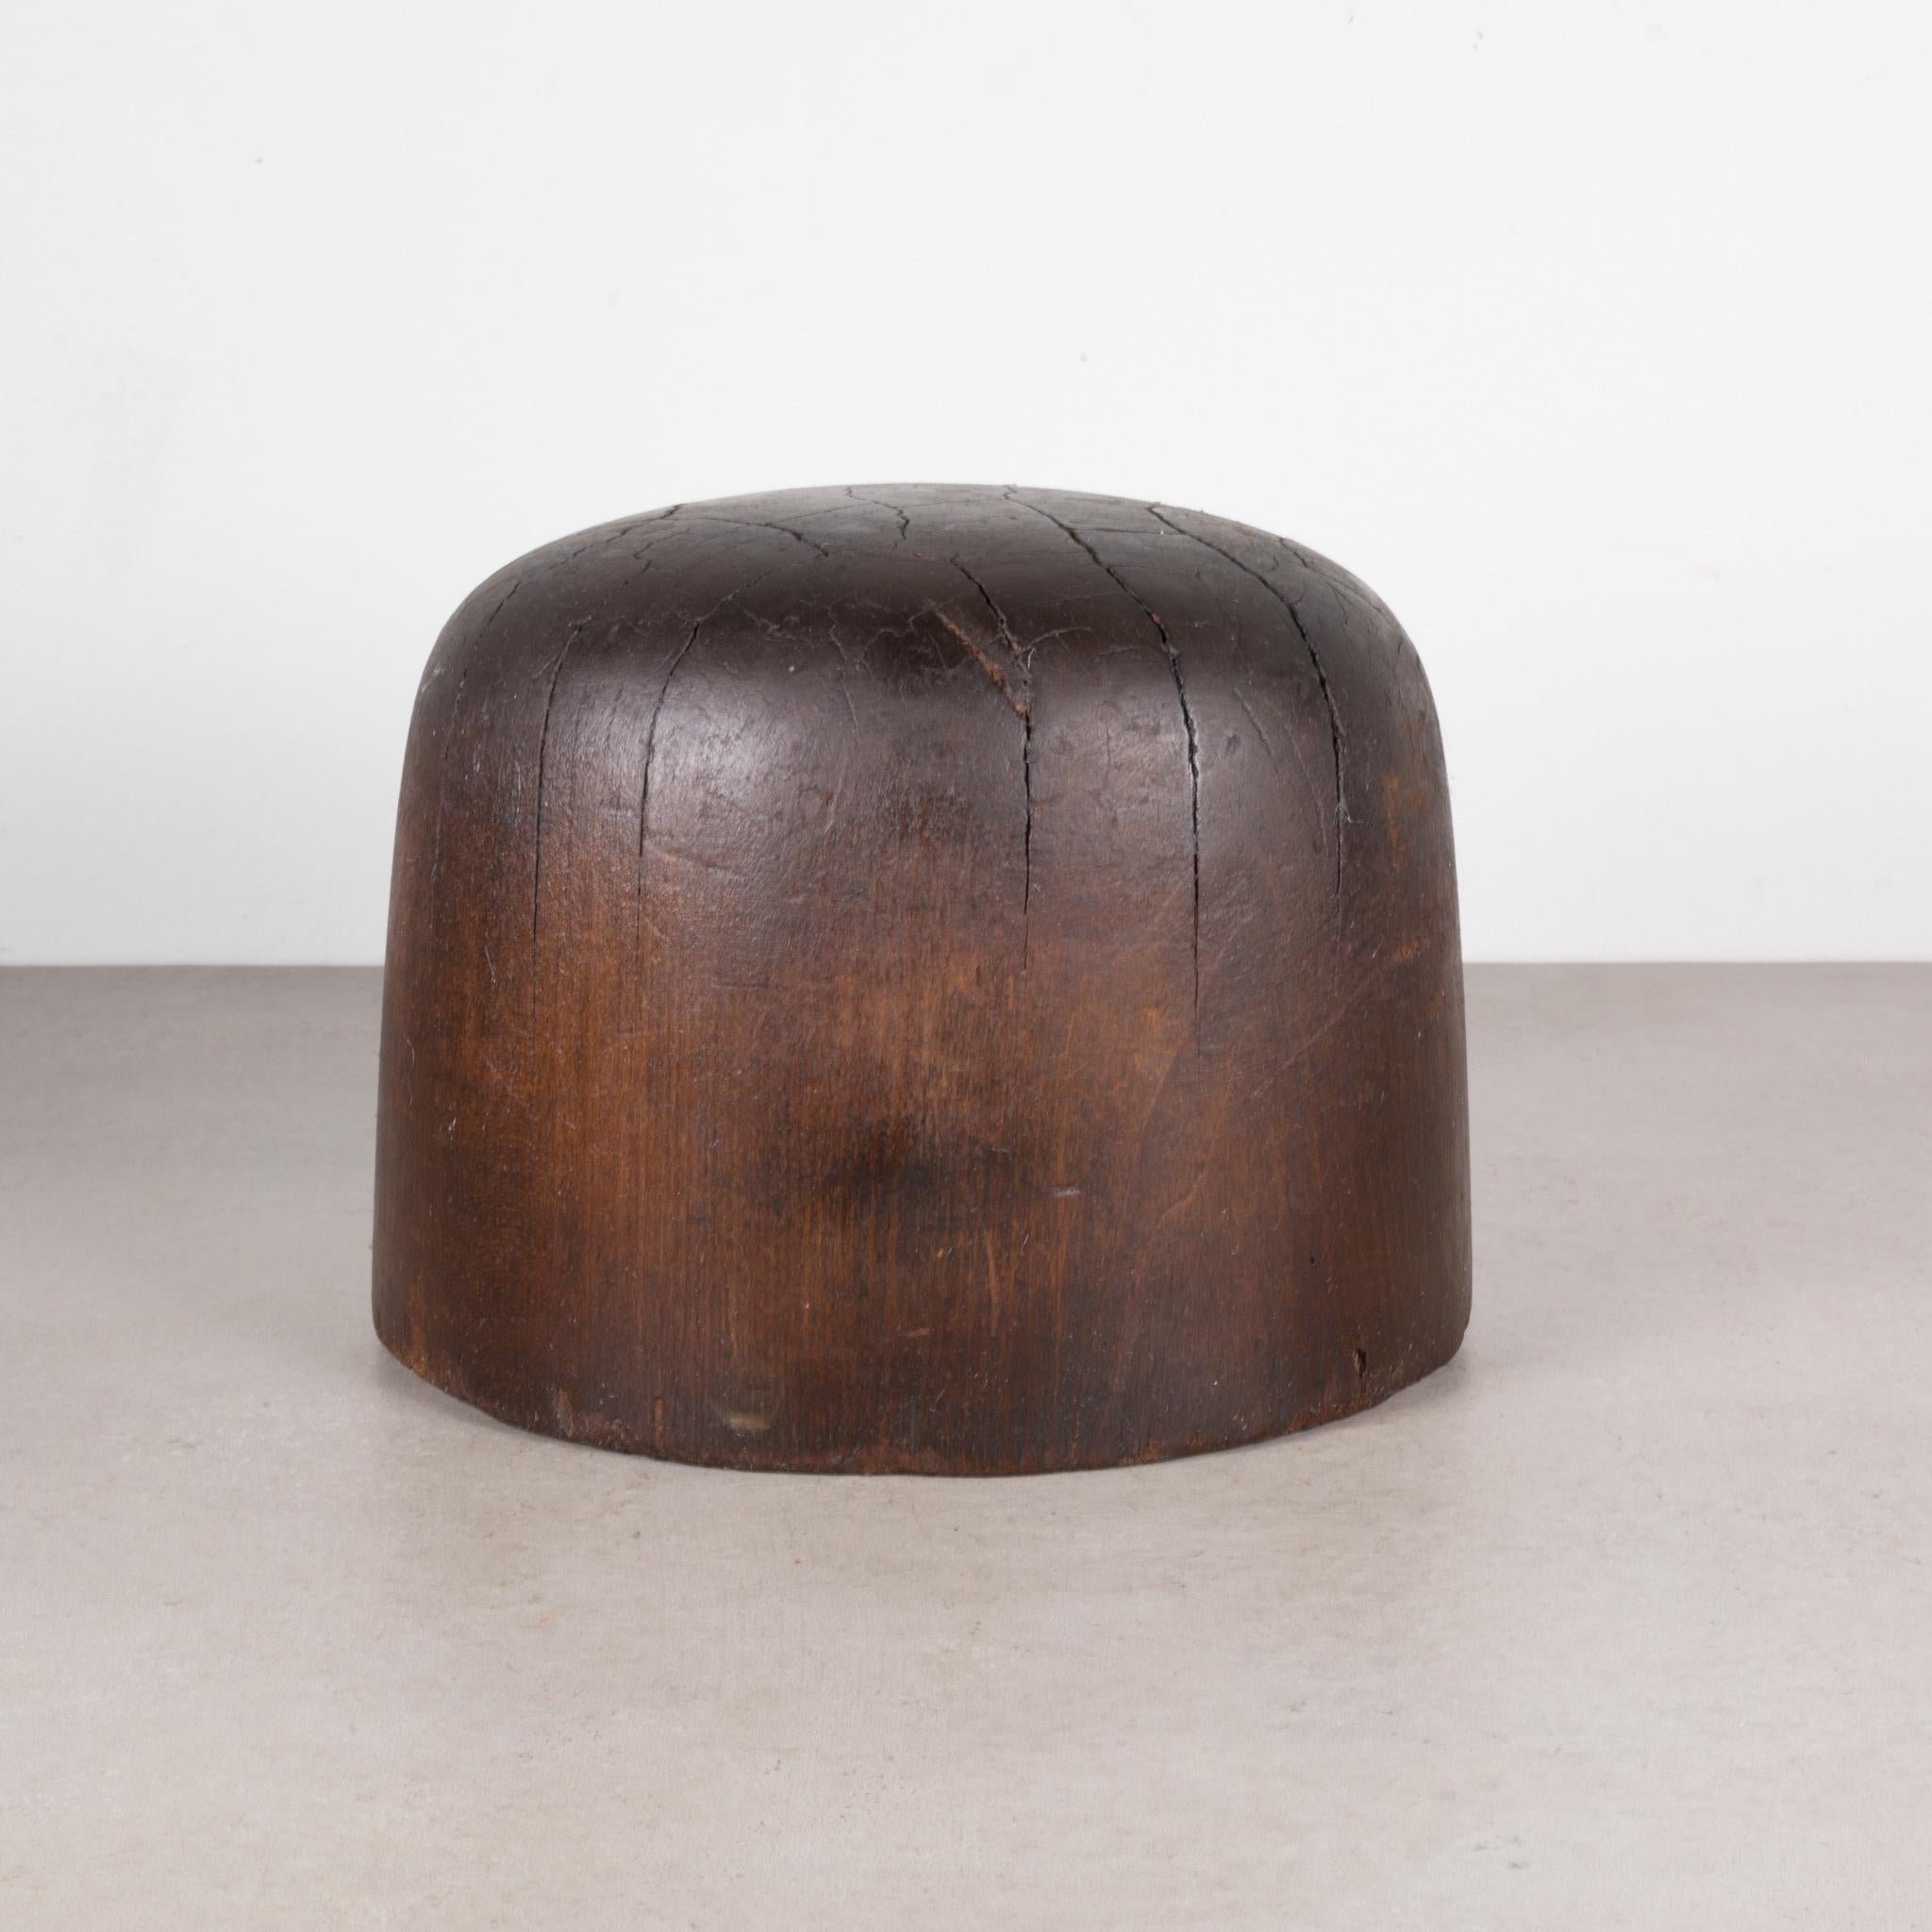 Wood  Antique Millinery Hat Form c.1890-1920